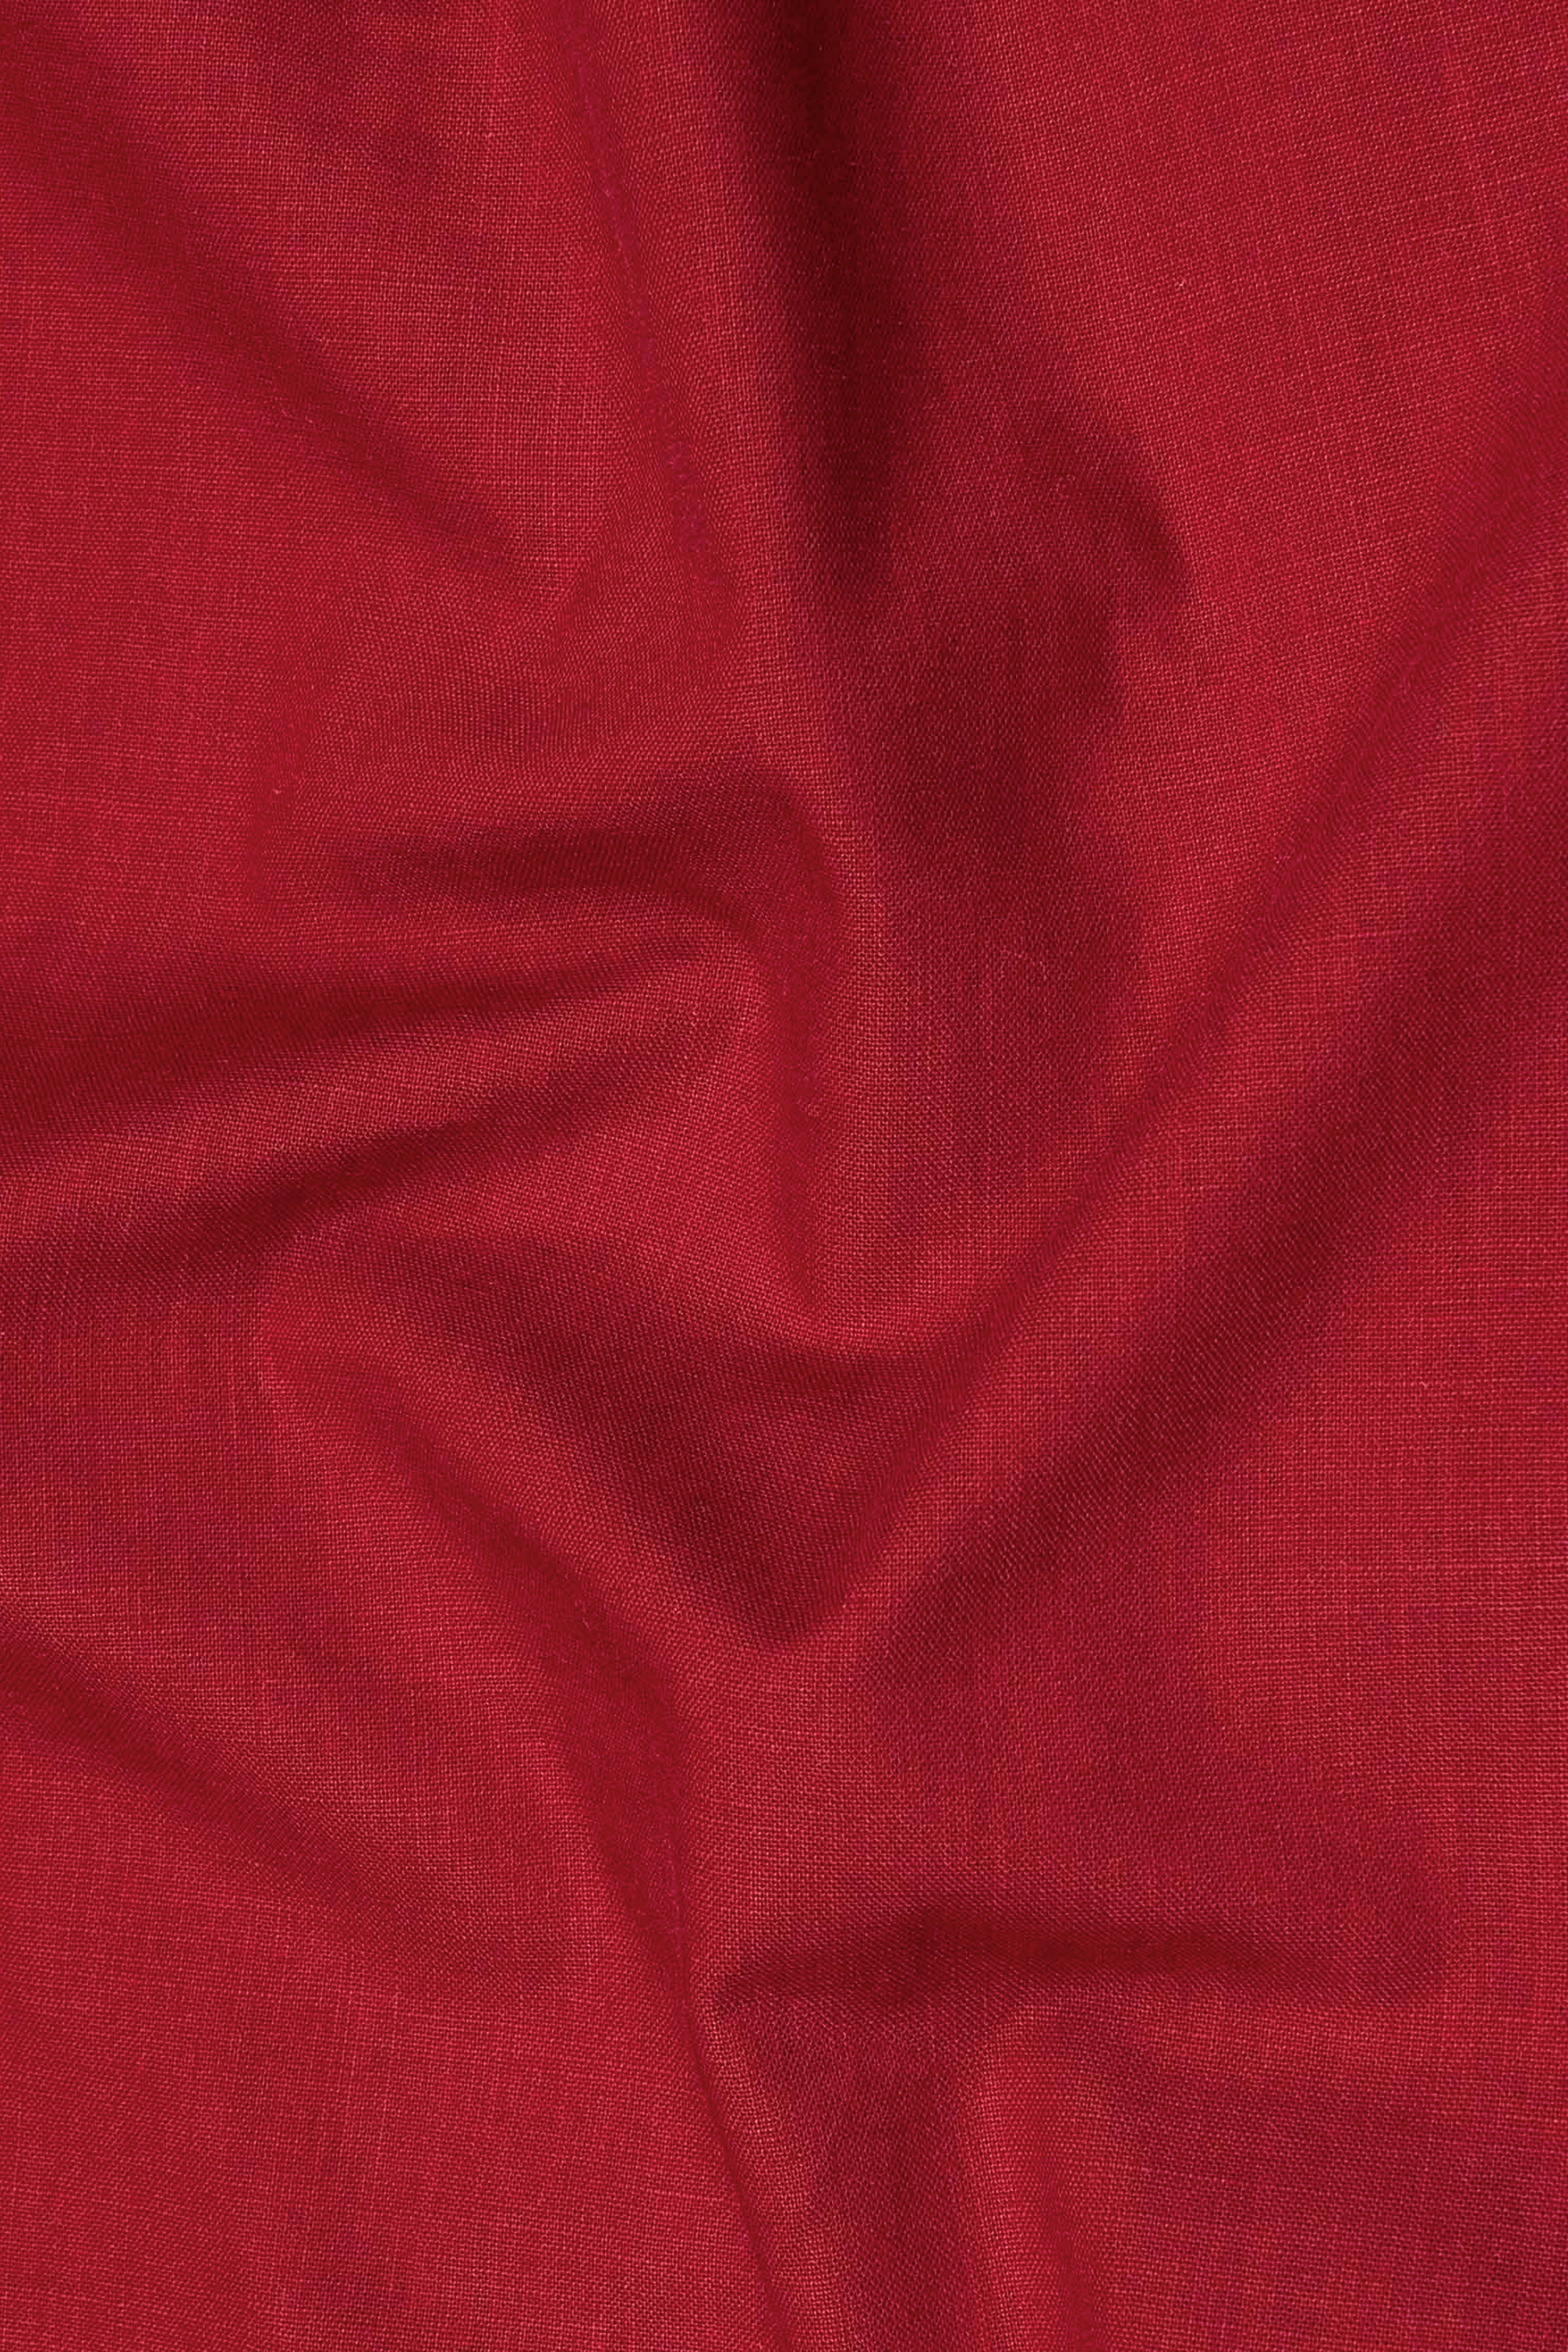 Old Brick Red Heavyweight Luxurious Linen Shirt